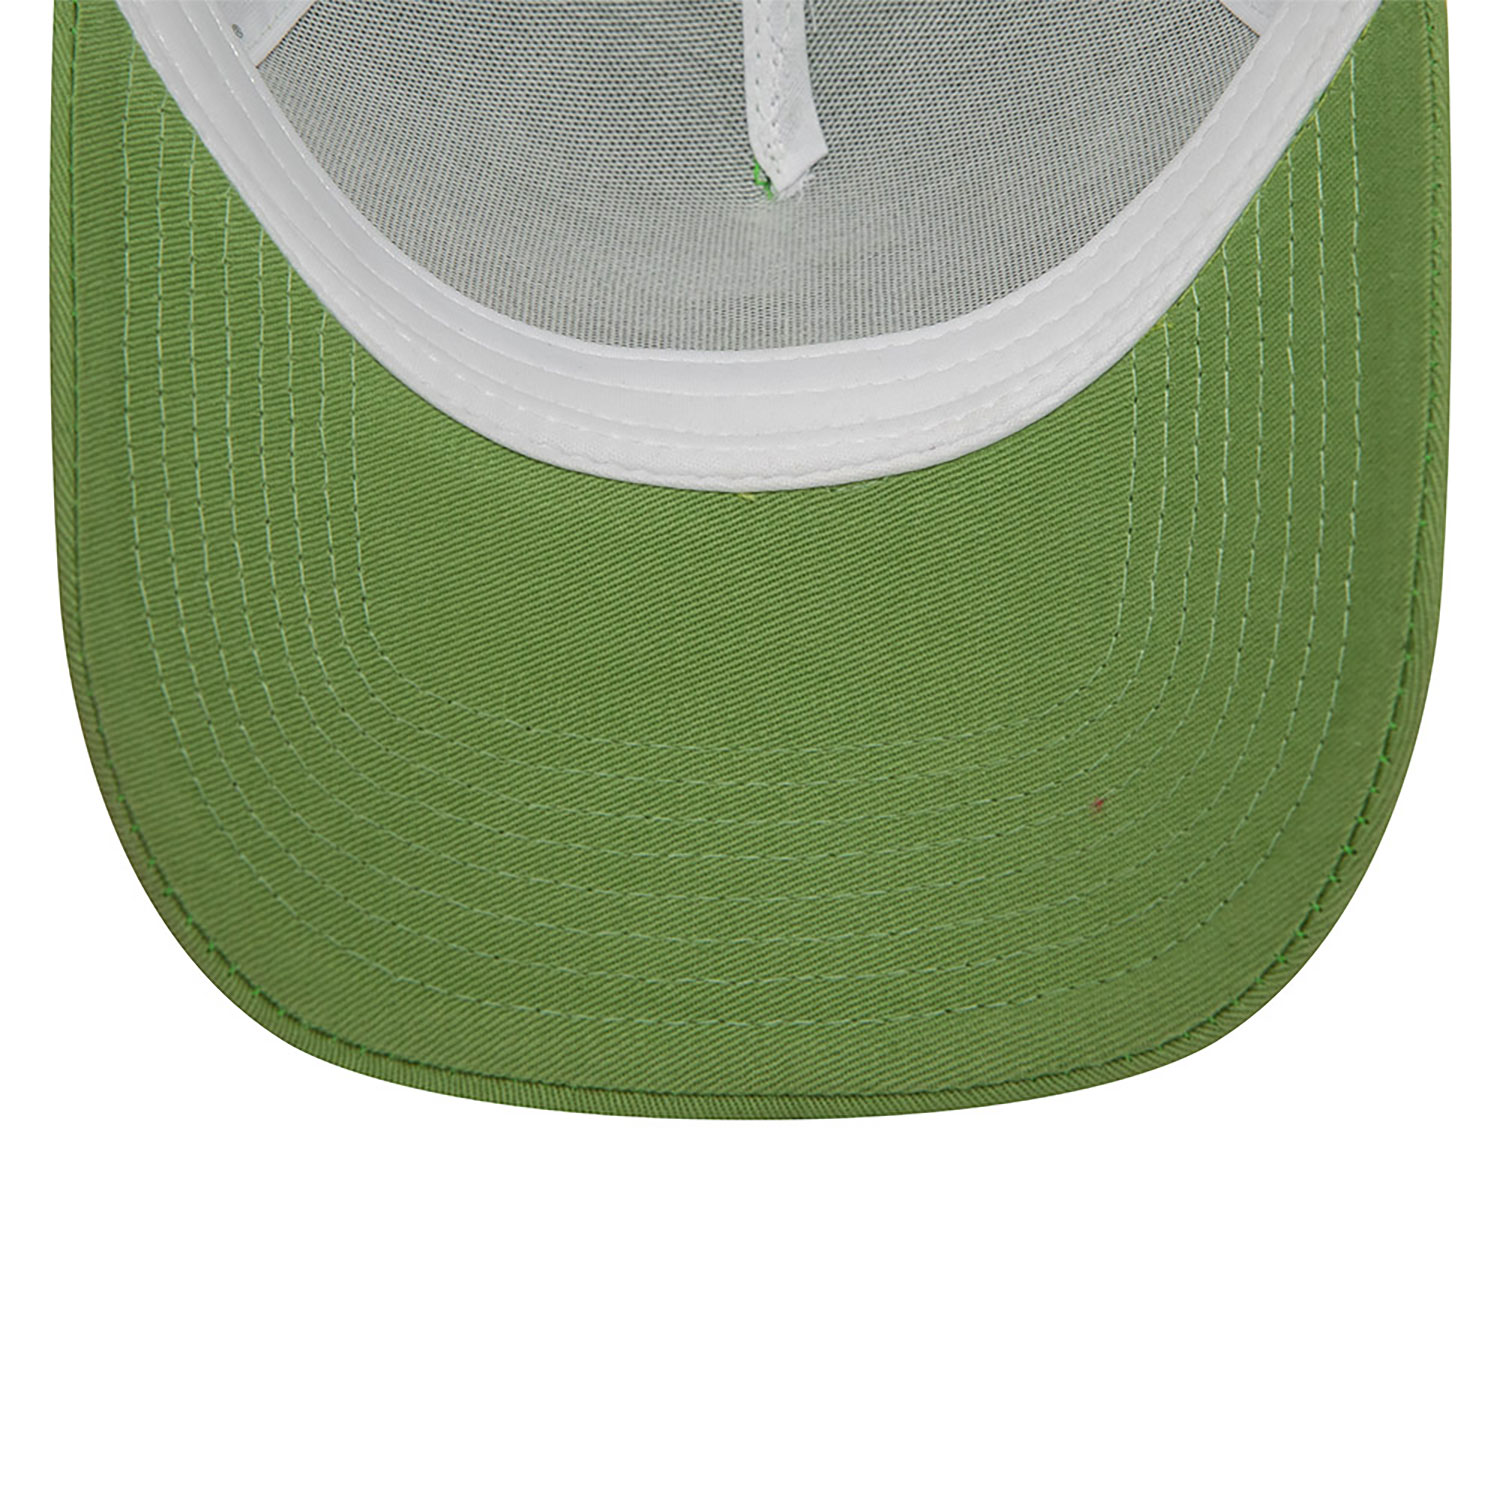 LA Dodgers League Essential Green Trucker Cap